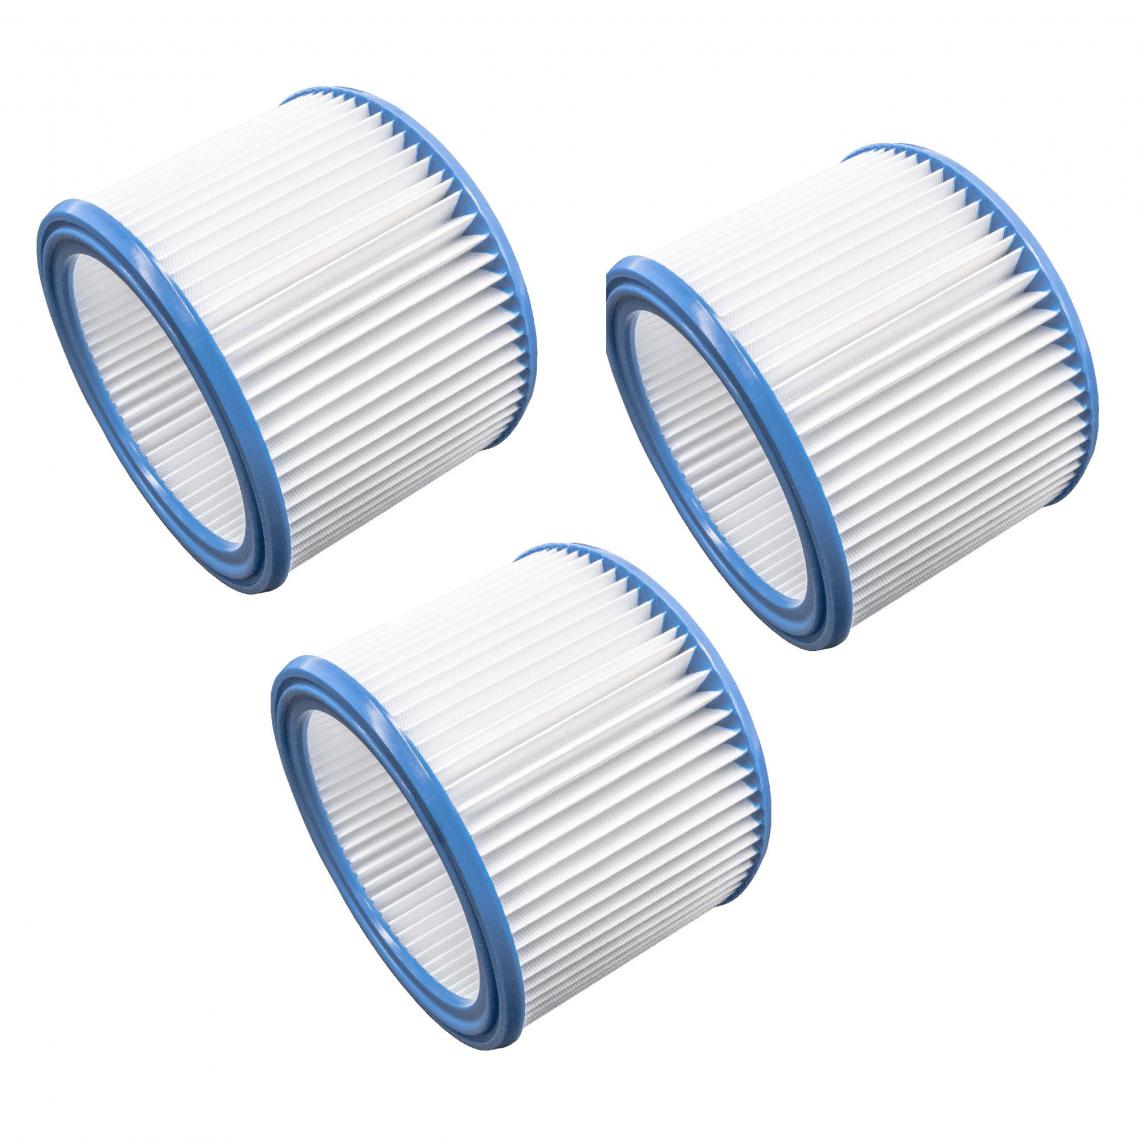 Vhbw - vhbw Set de filtres 3x Filtre plissé compatible avec Nilfisk / Alto / Wap Attix 40-21 PC, 50, 50-01 PC aspirateur à sec ou humide - Filtre à cartouche - Accessoire entretien des sols